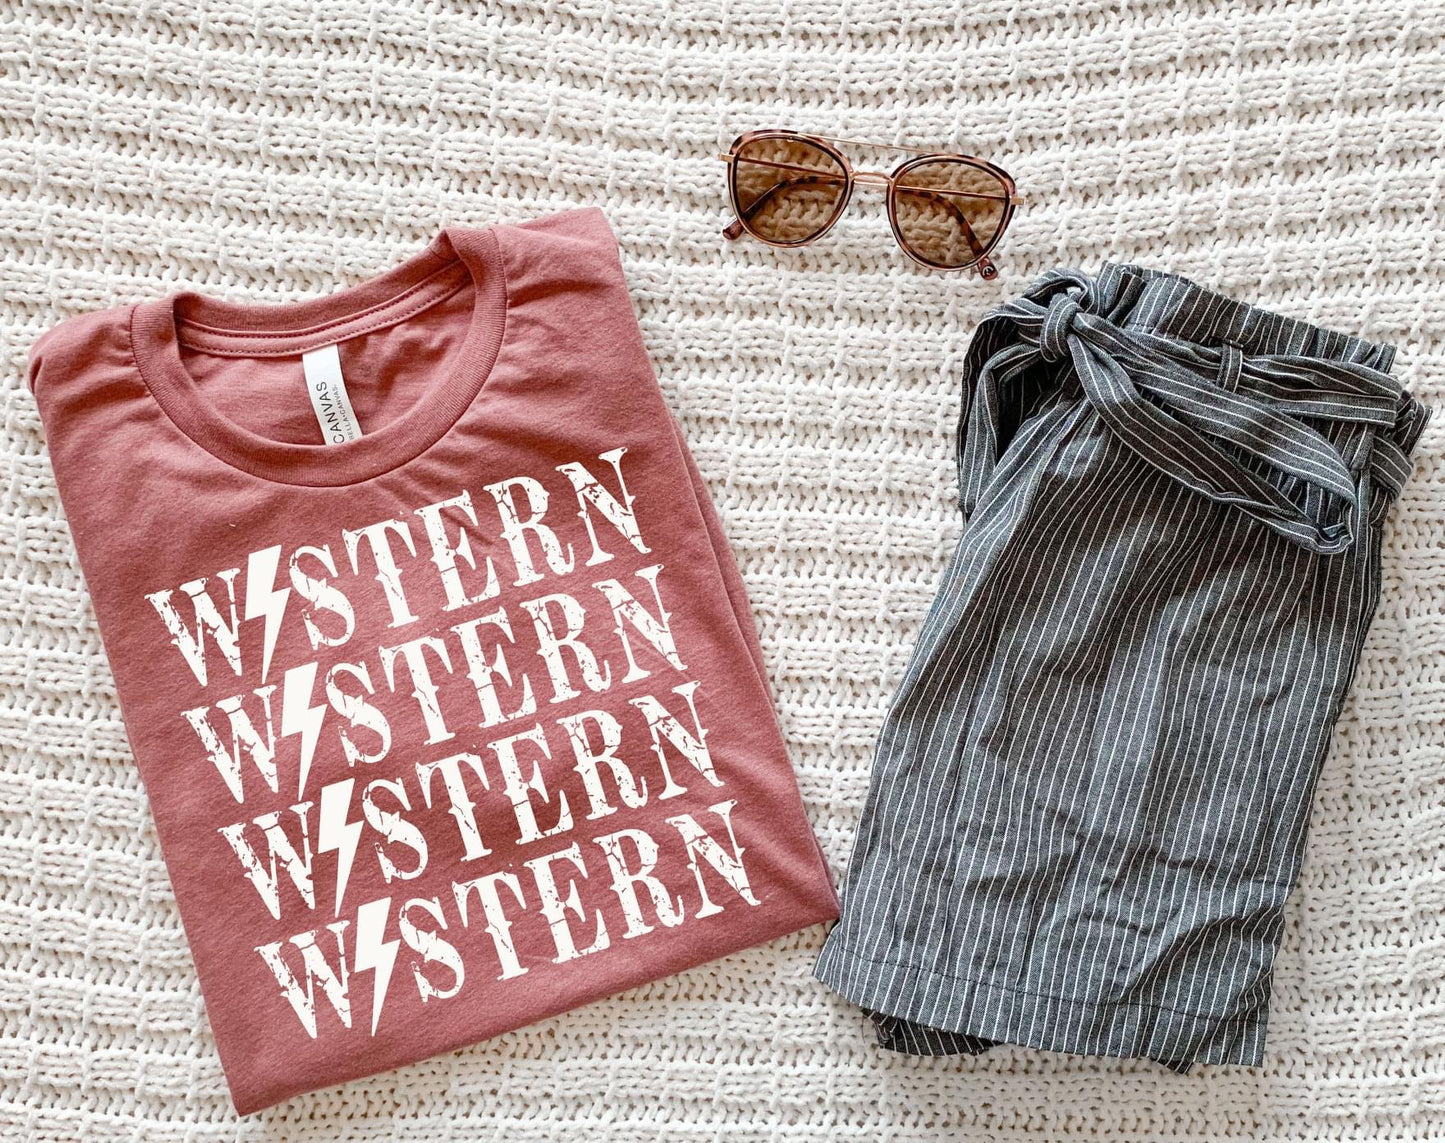 Western Western Western